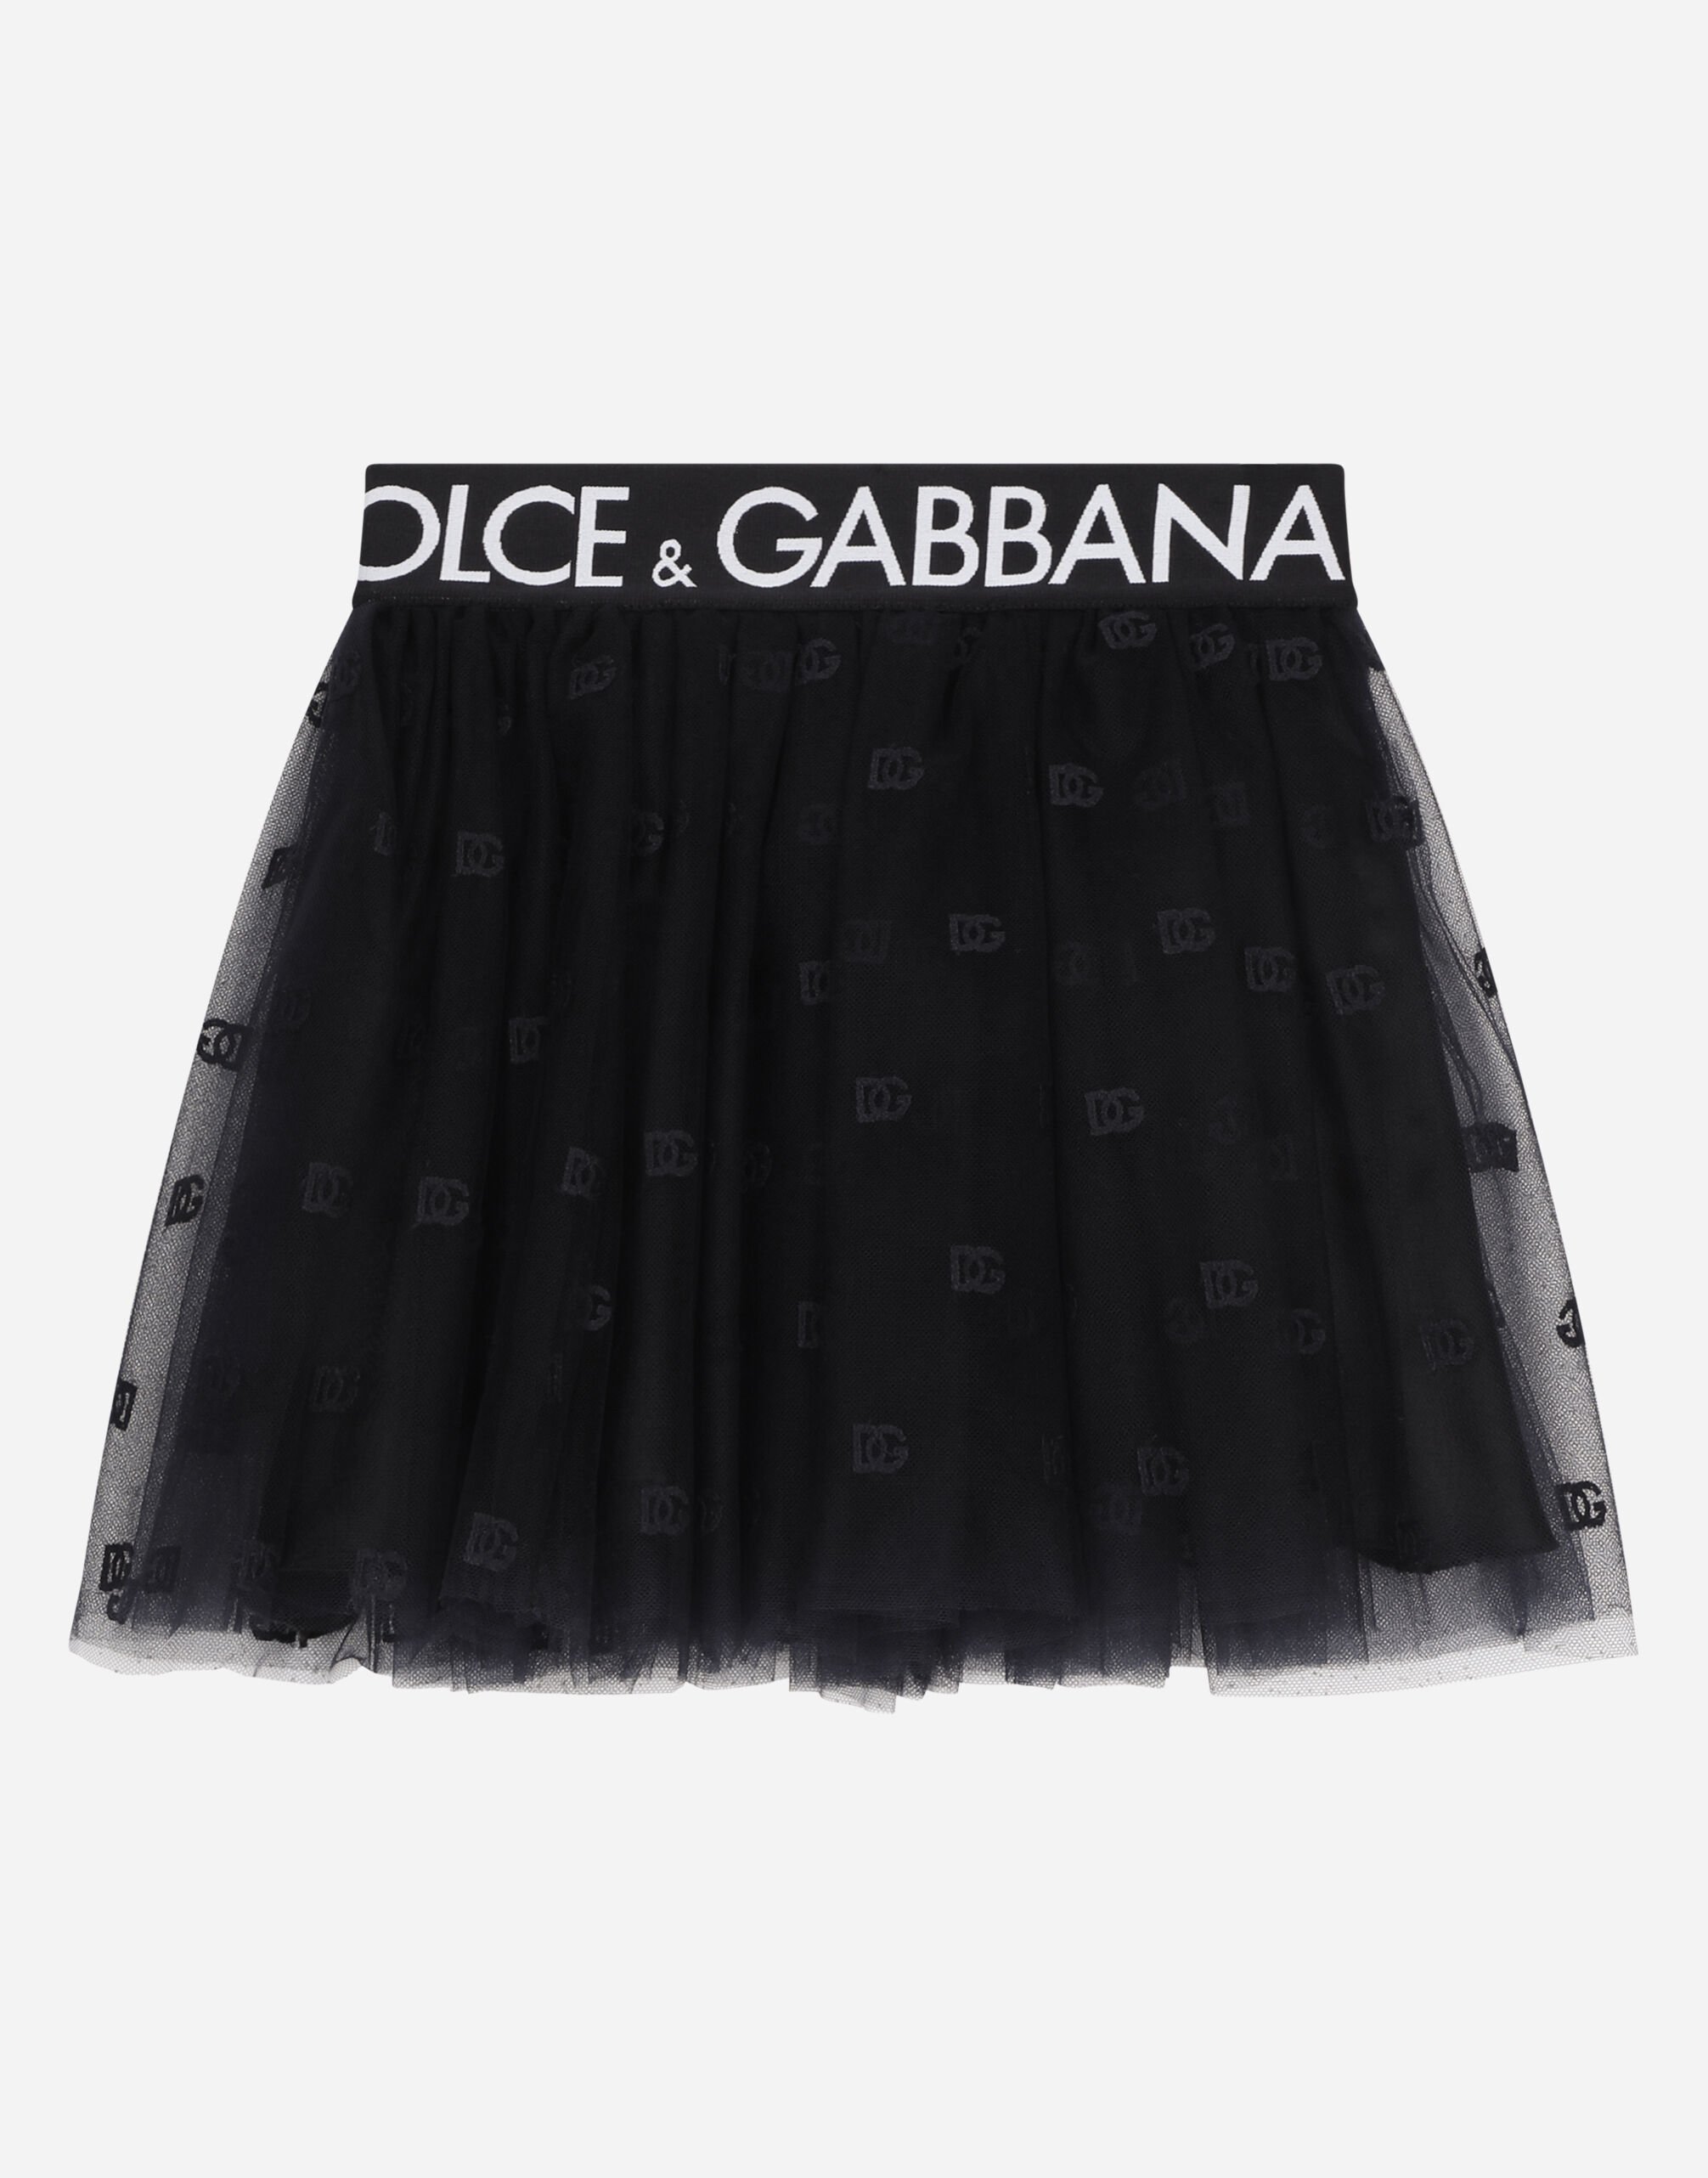 Dolce & Gabbana Minifalda de tul multicapa con logotipo en cinta elástica Negro EB0003AB000